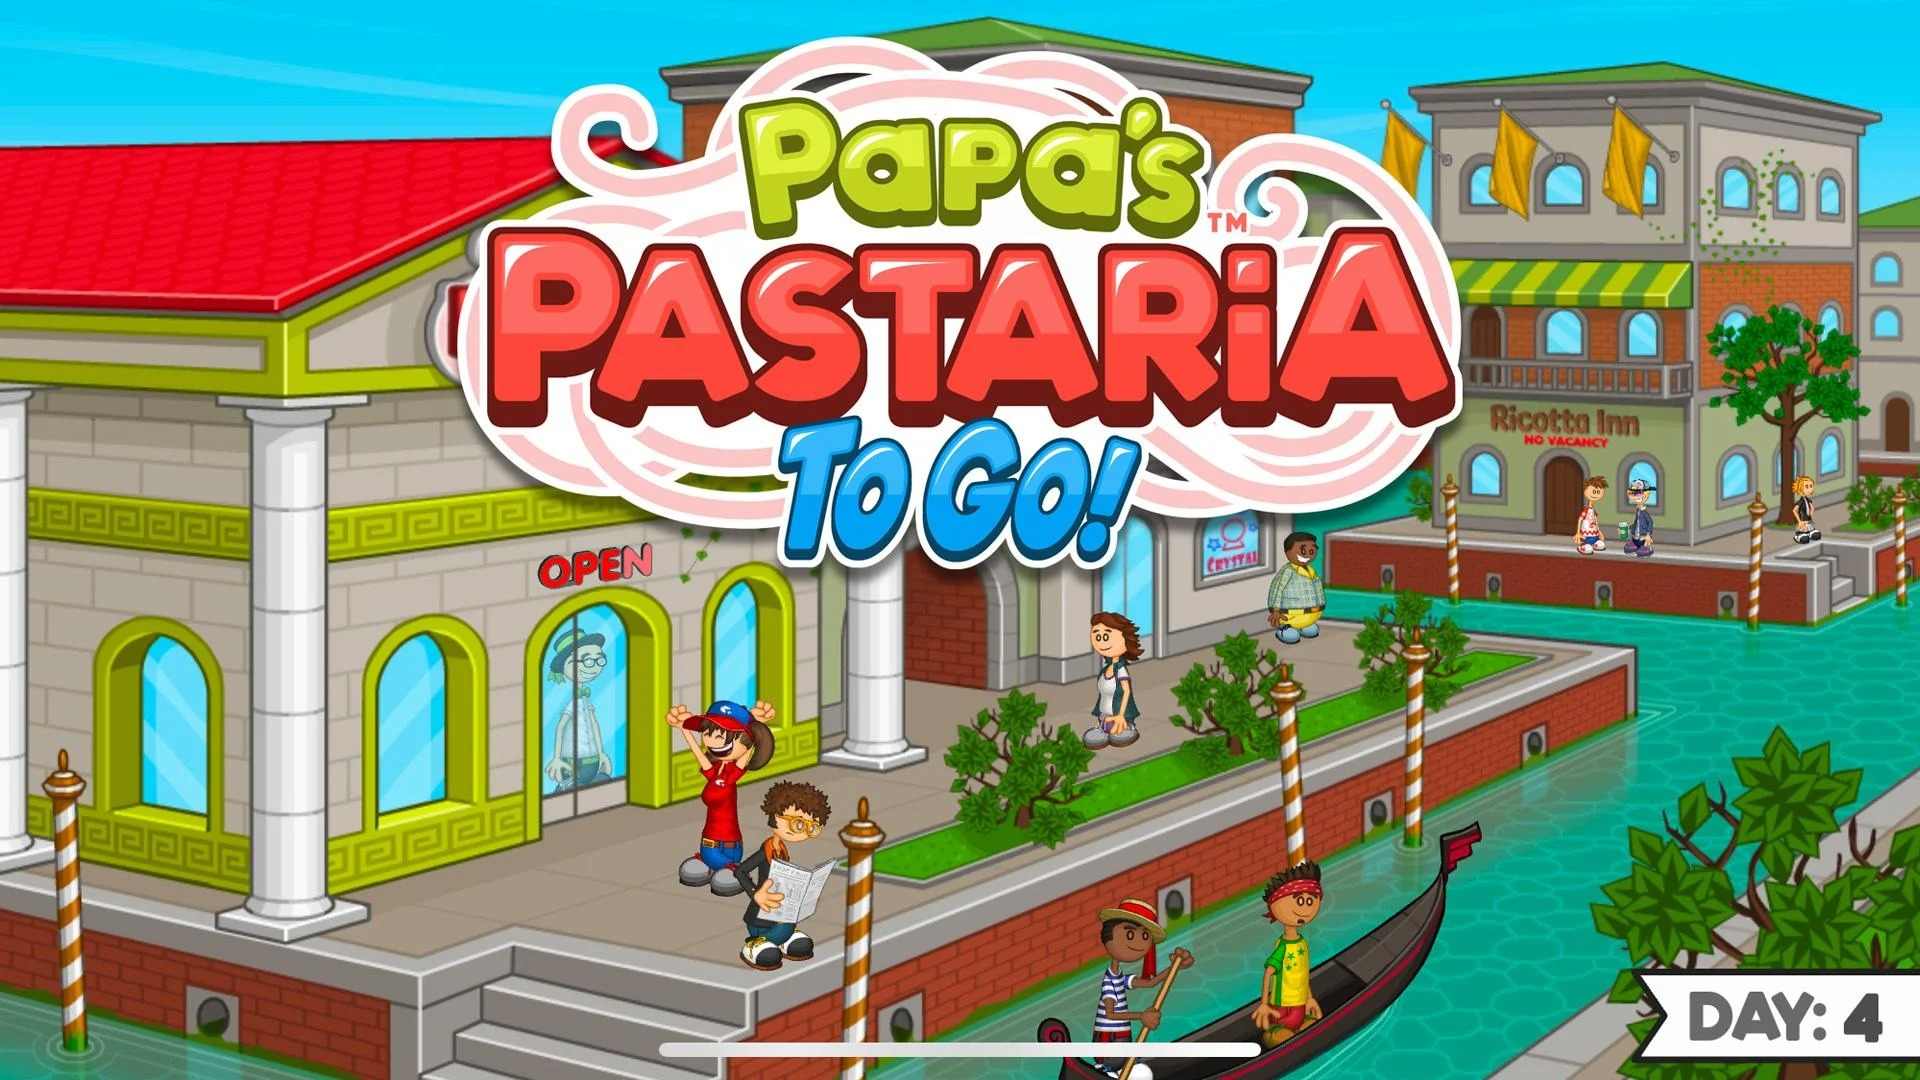 老爹意大利面店 (Papa's Pastaria To Go!)v1.0.0